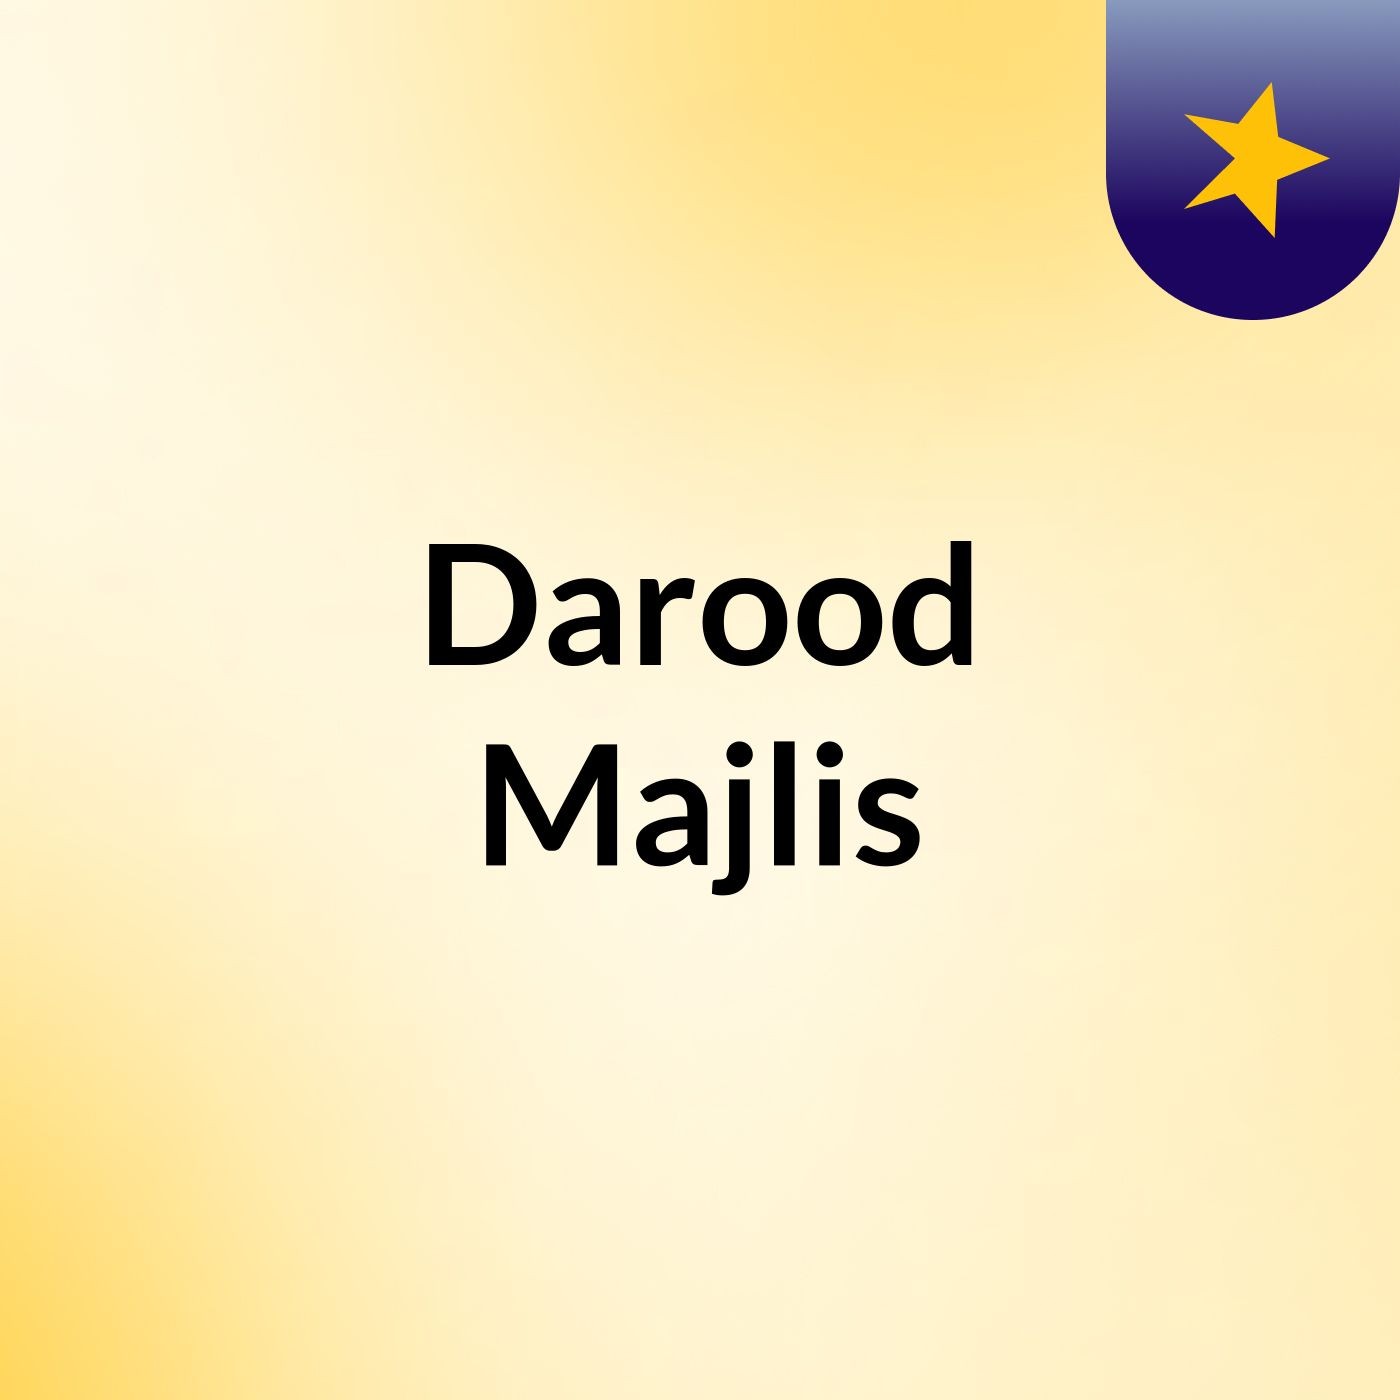 Darood Majlis